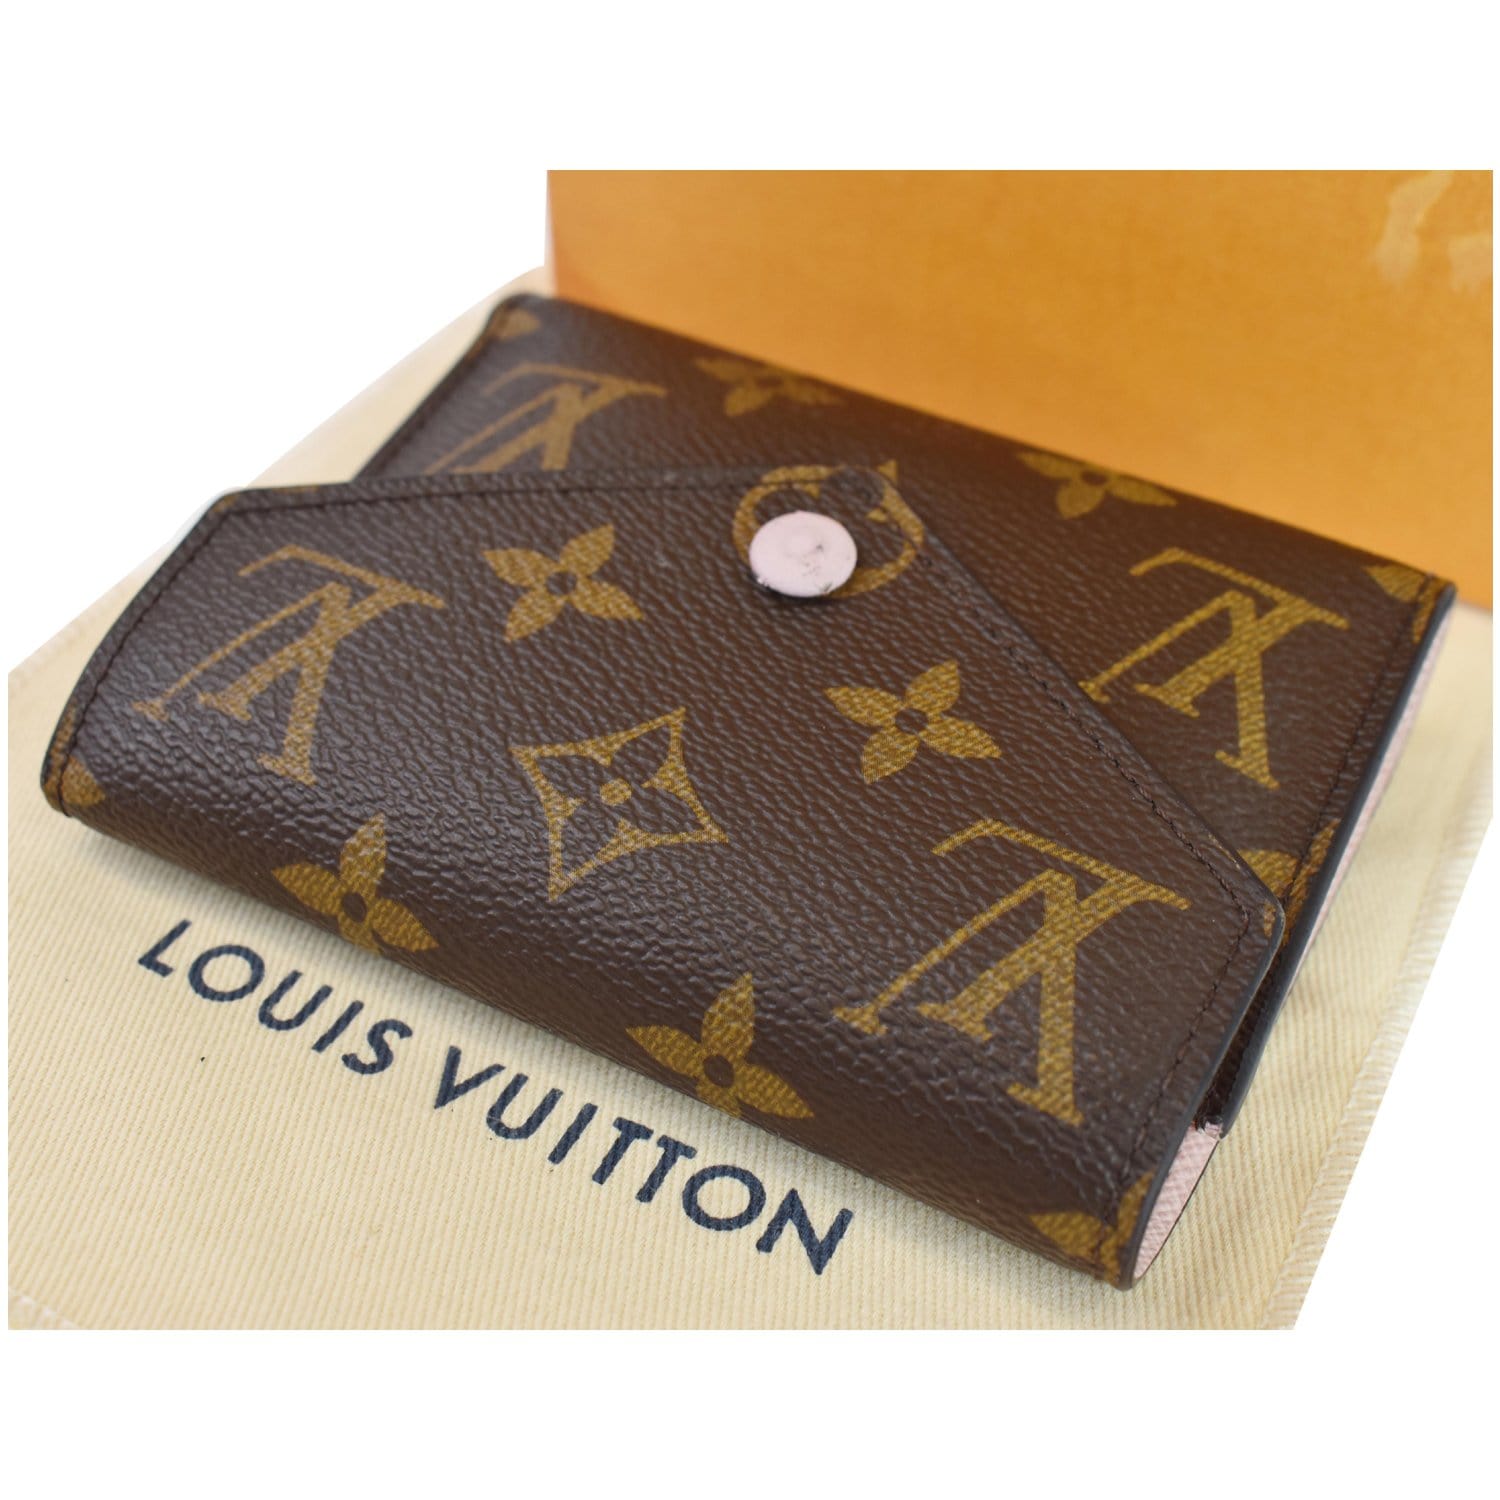 NEW! 2017 Authentic Louis Vuitton Monogram Canvas Victorine Wallet